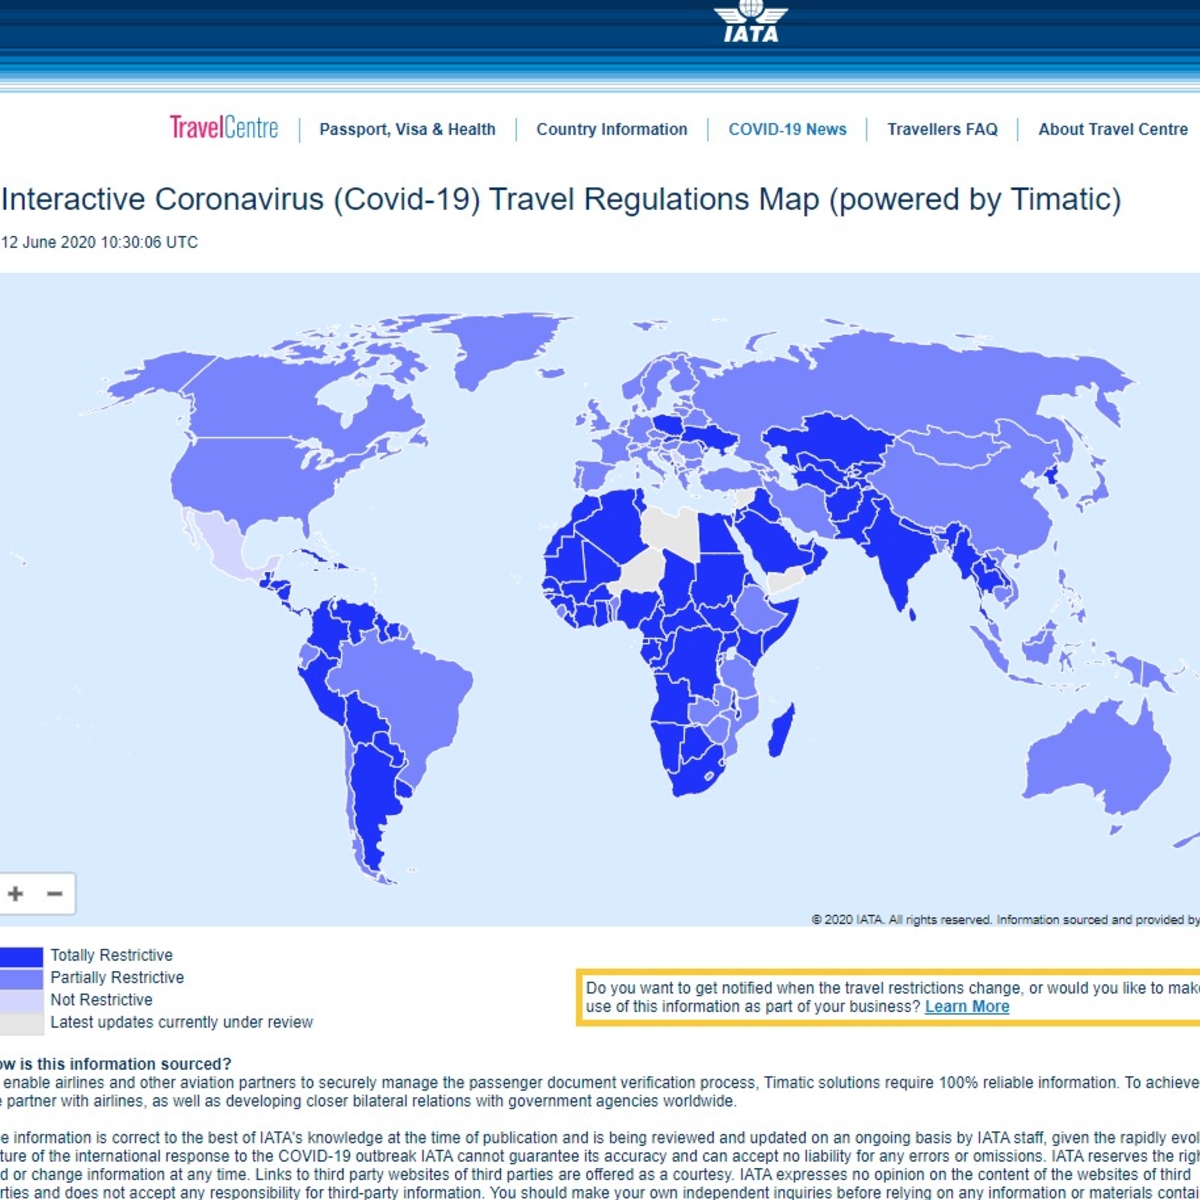 Une carte interactive pour connaître, en temps réel, les restrictions de voyage dues à la pandémie de COVID-19